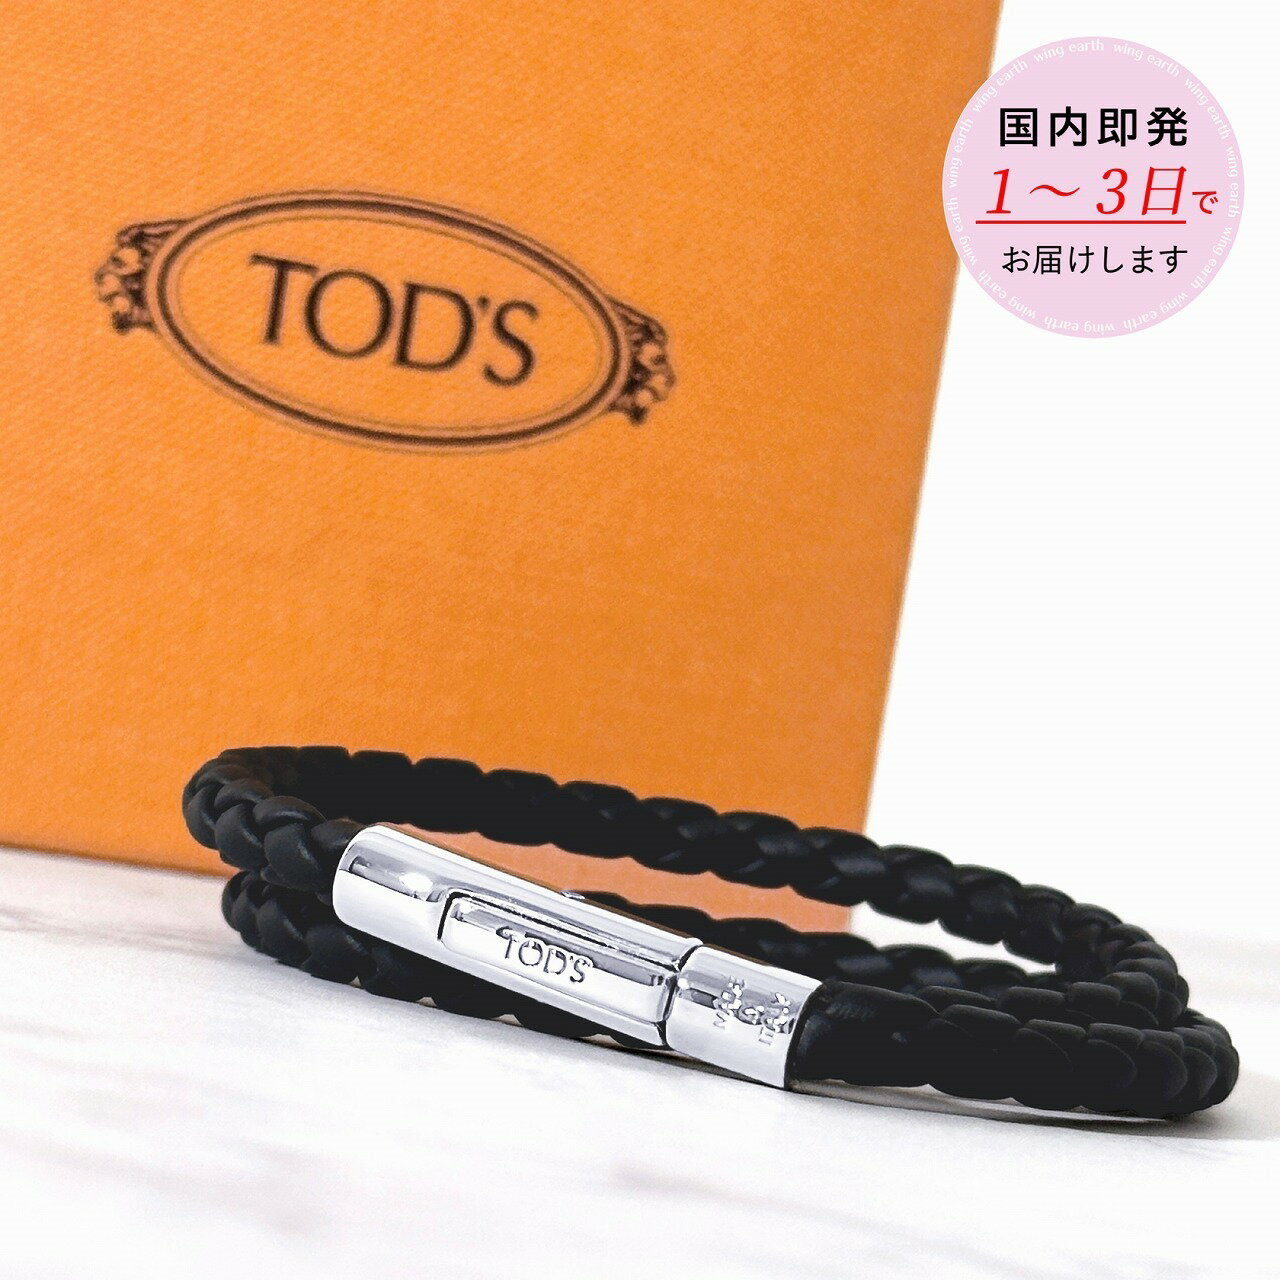 TOD'S レザー ブレスレット ブラック メンズ XEMB1900200FLR【返品送料無料】 【ラッピング無料】